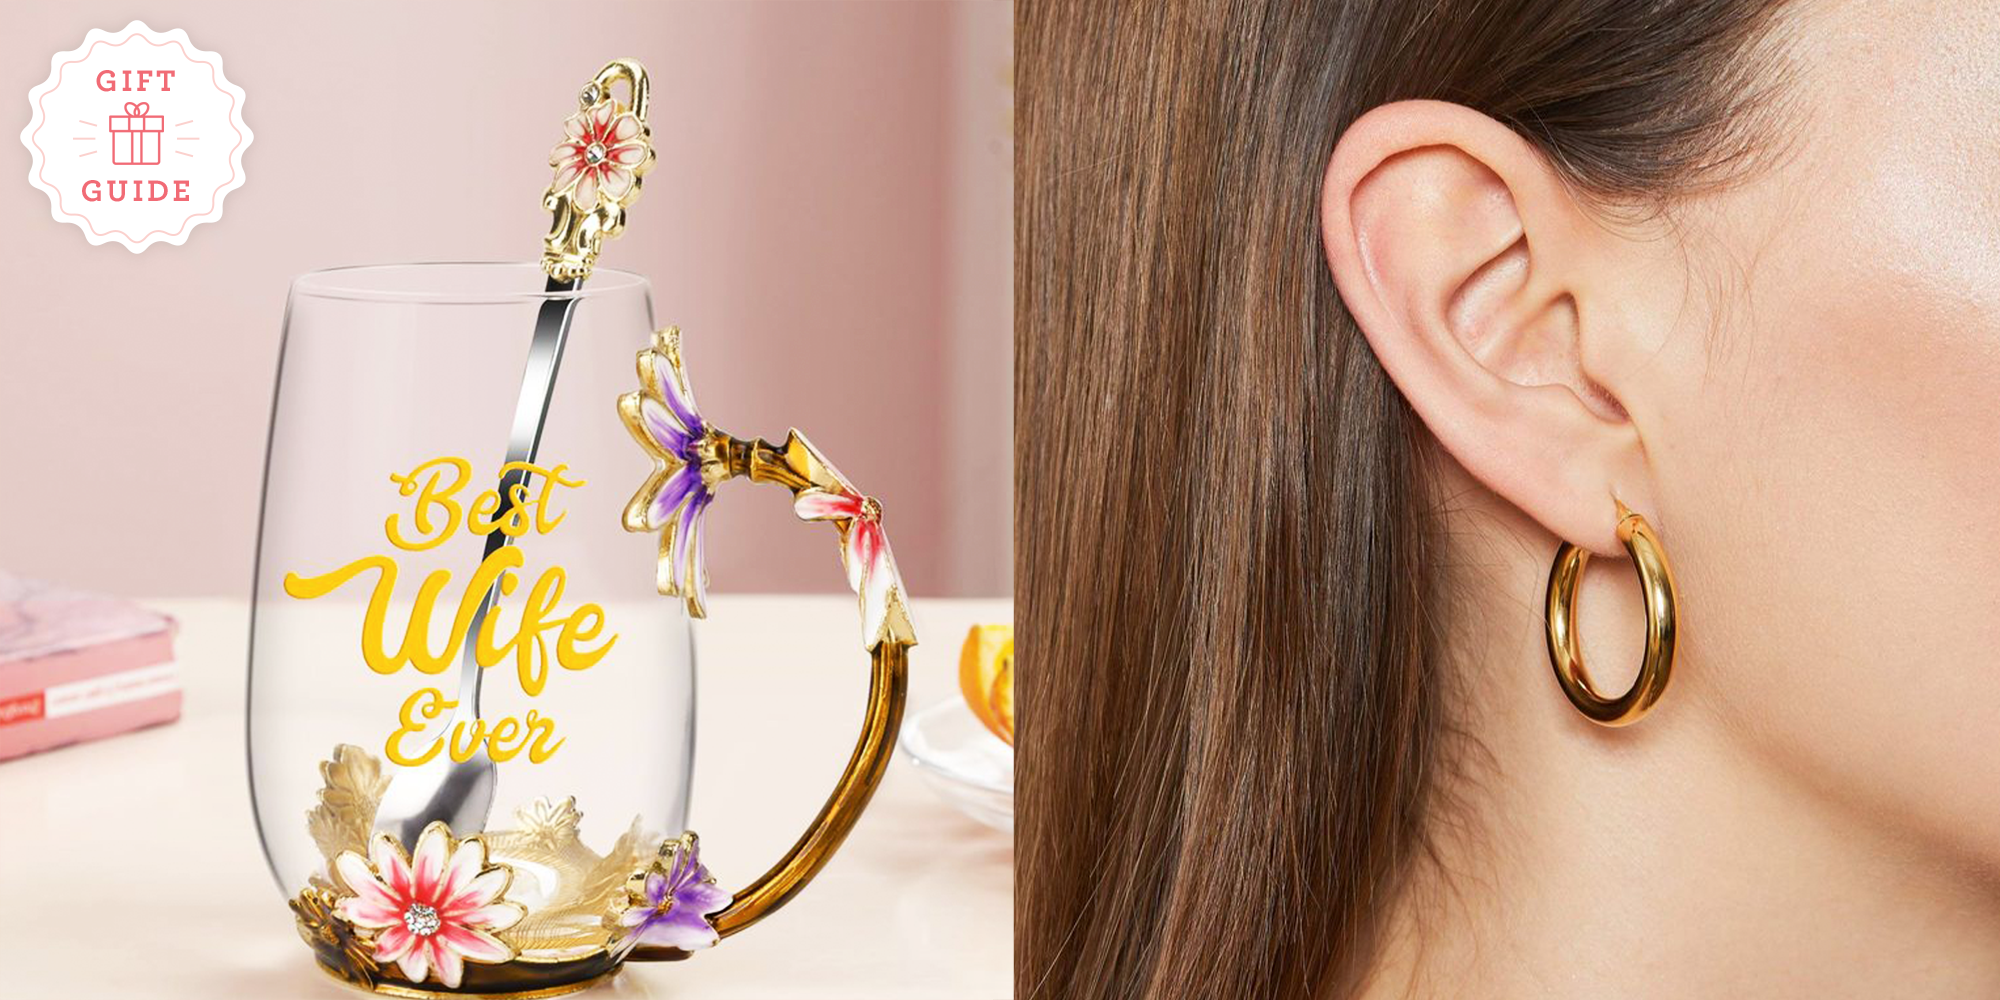 Creative Butterfly Star Flower Earrings Elegant Ornaments Cute Ear Jewelry  For Women Birthday Gift - Temu